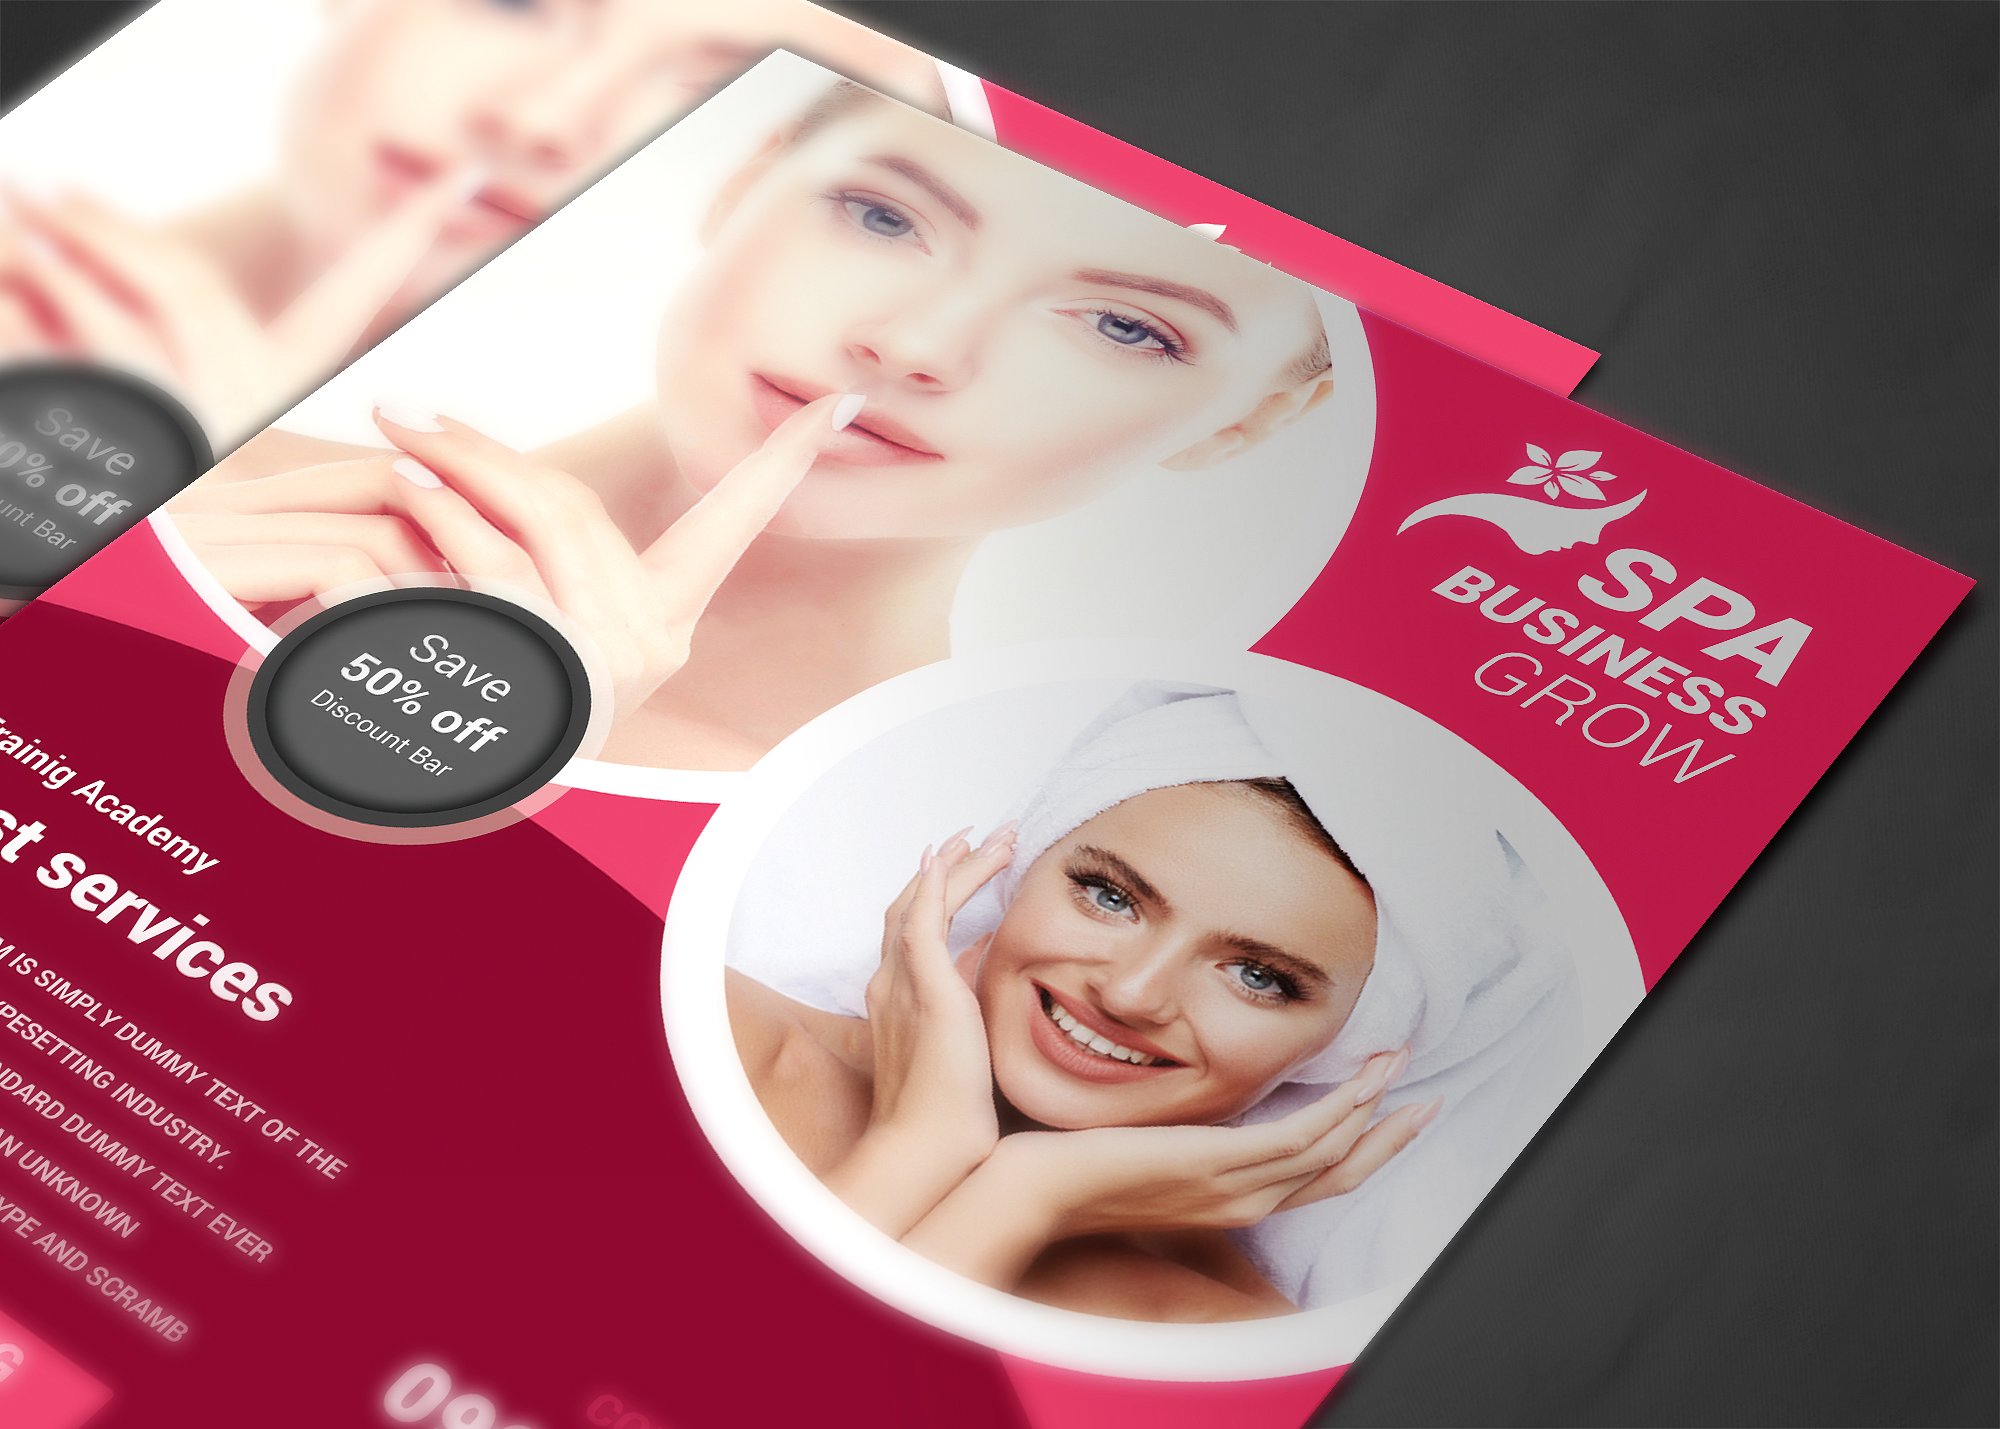 美容护肤品牌宣传海报模板 SPA Beauty Flyer Template插图(3)